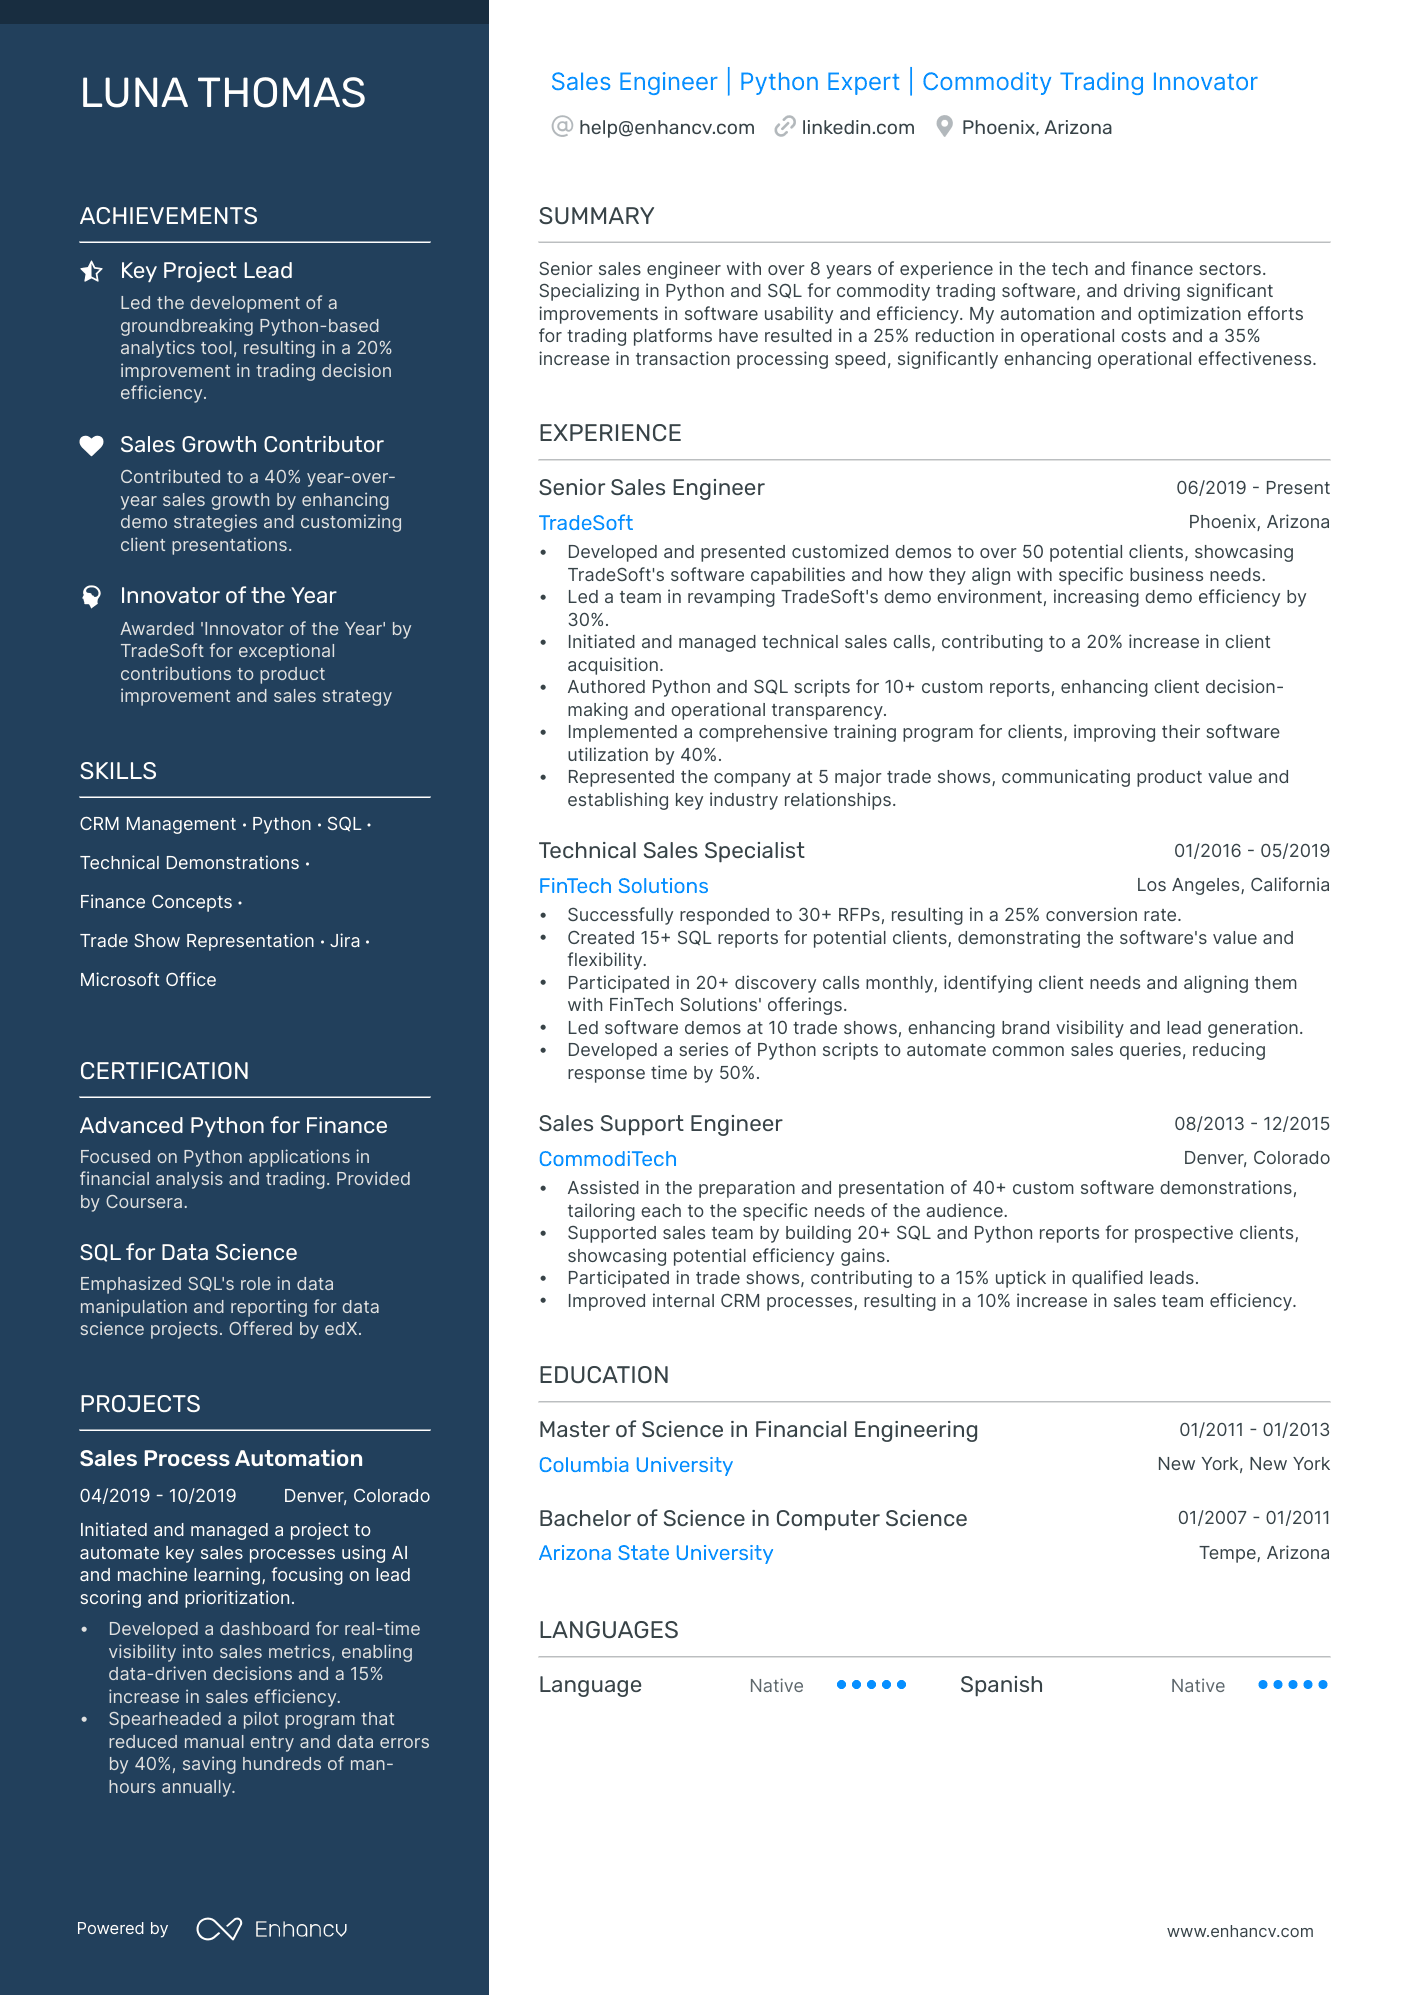 Sales Engineer resume example